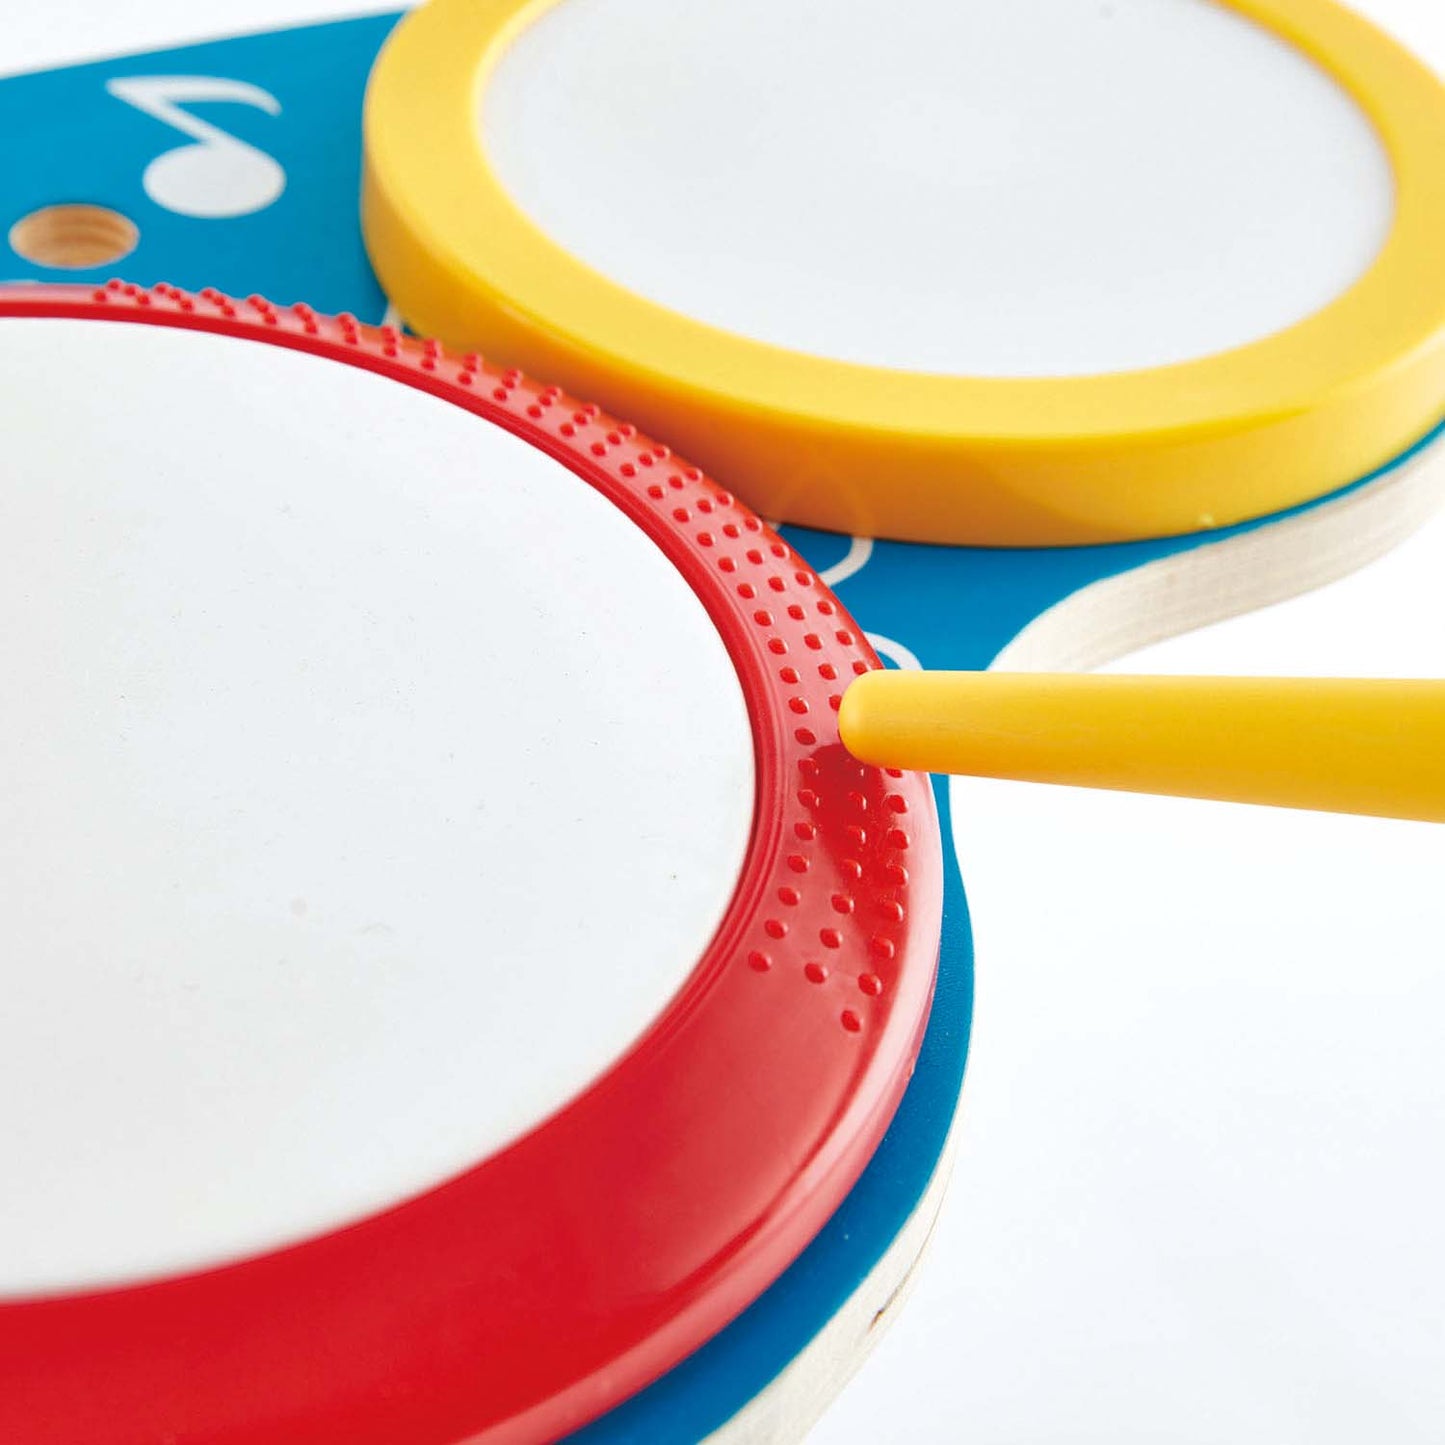 Hape - Drum and Cymbal Set - BambiniJO | Buy Online | Jordan